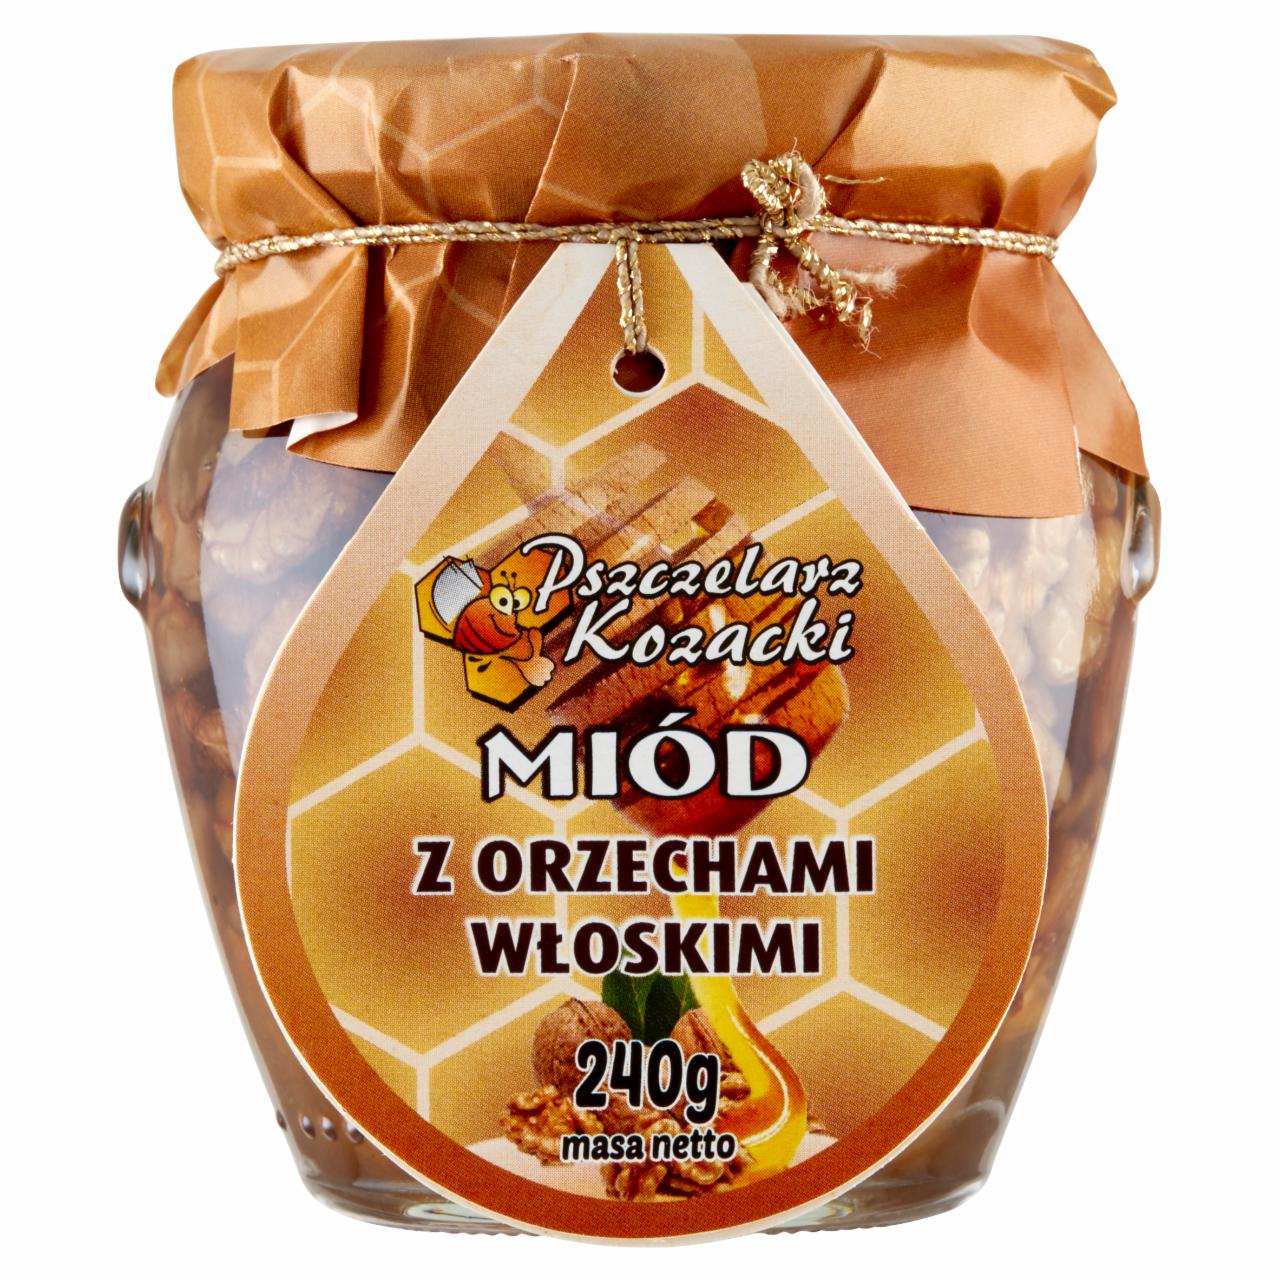 Zdjęcia - Pszczelarz Kozacki Miód z orzechami włoskimi 240 g